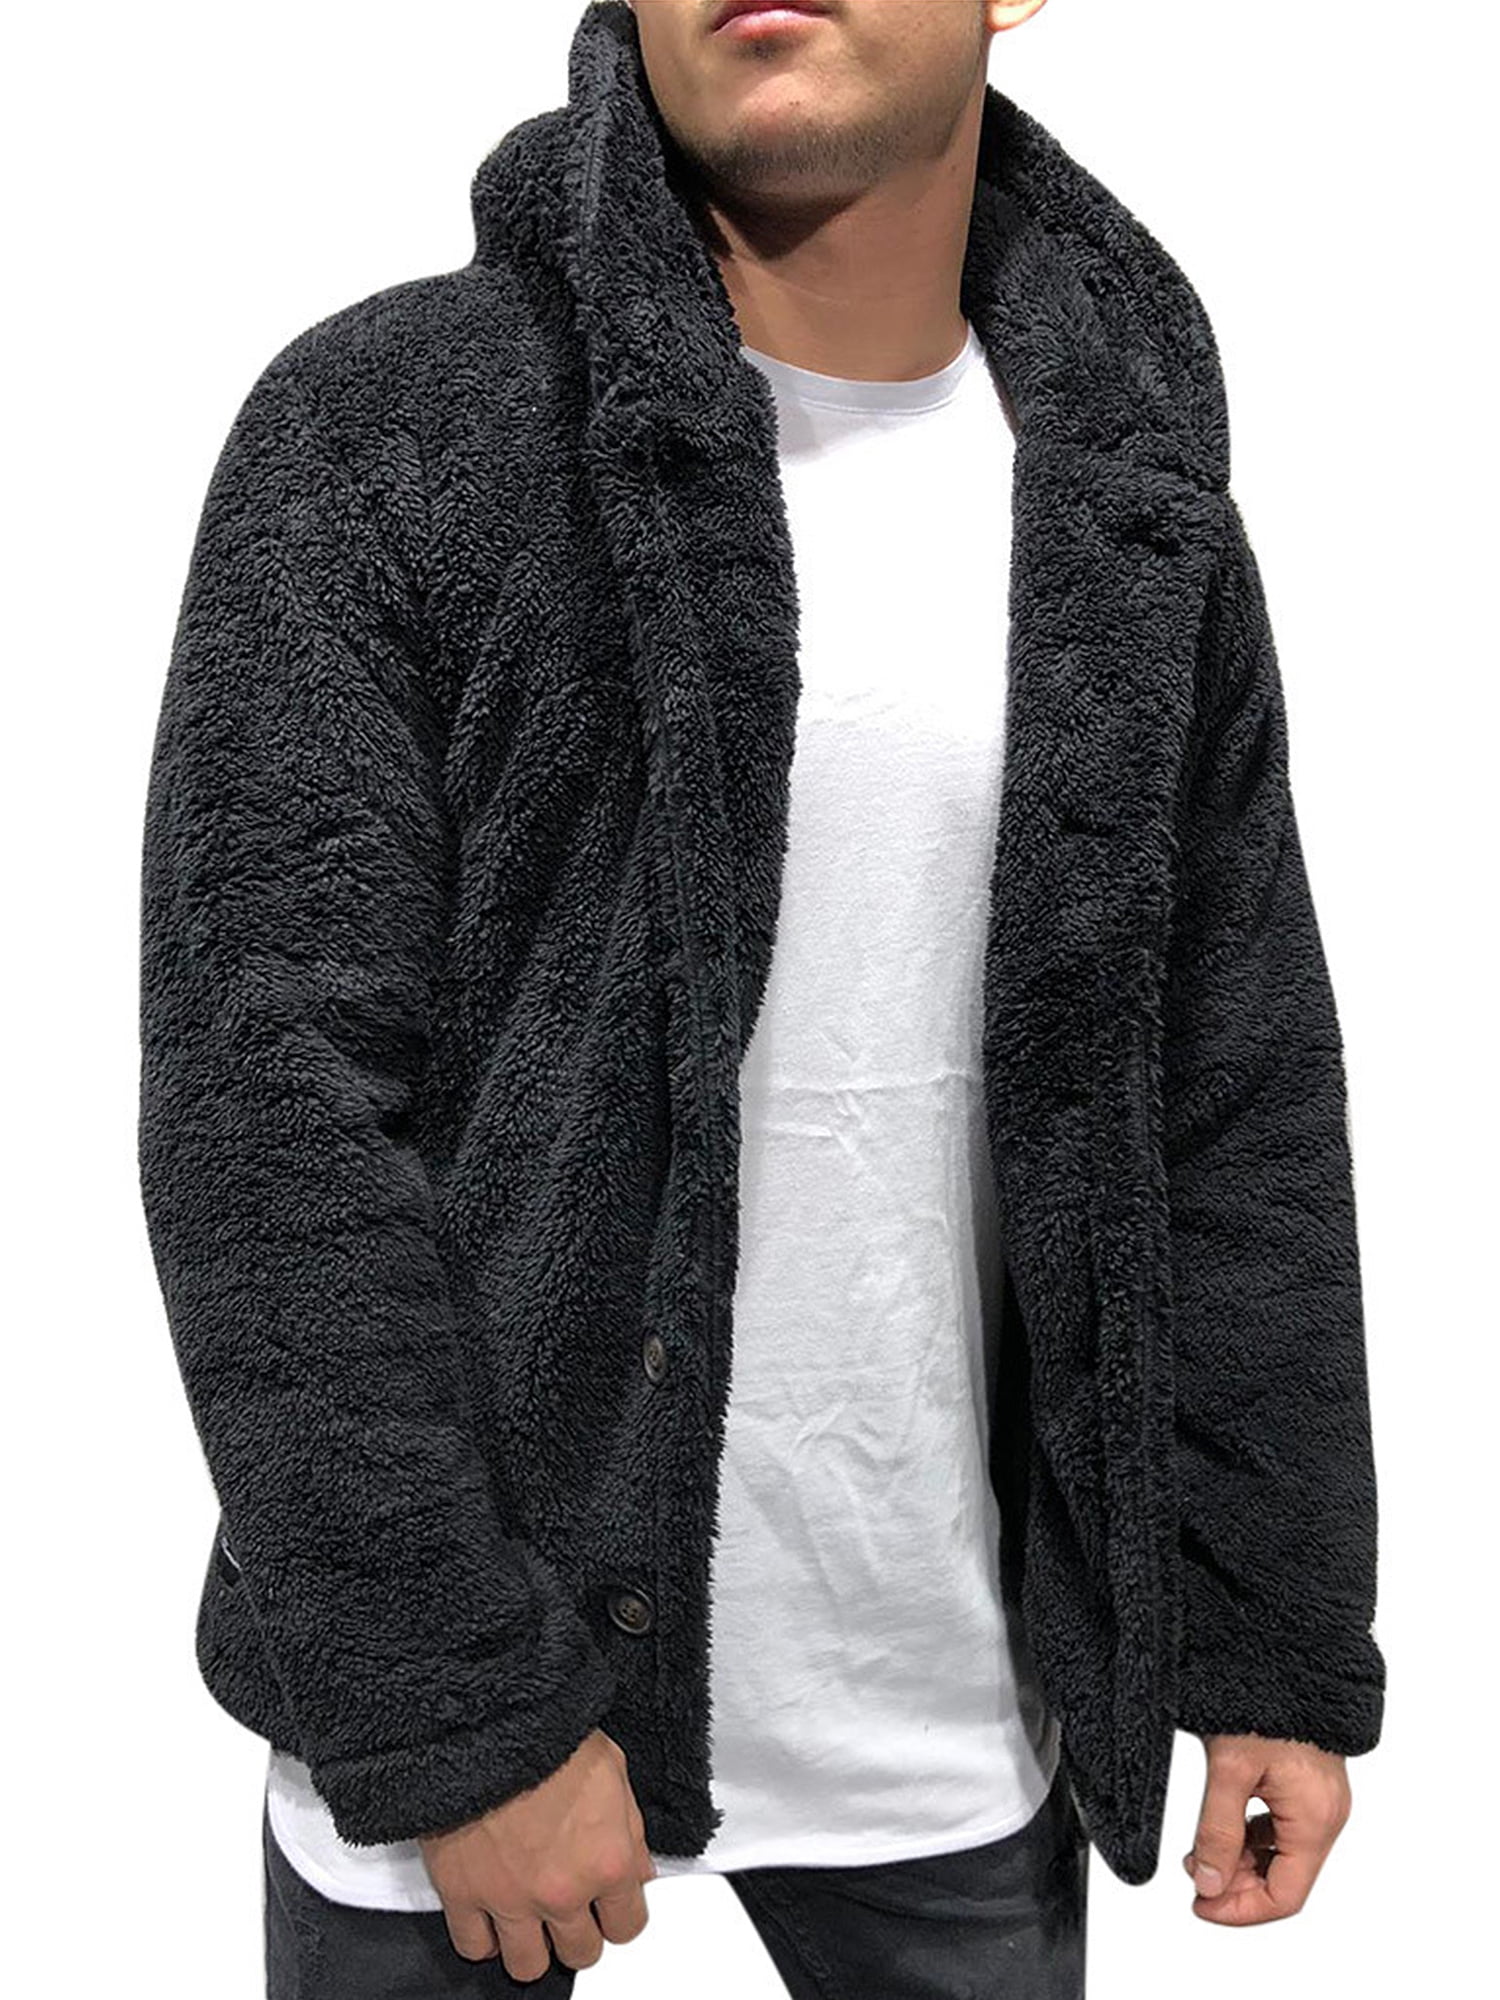 MAWCLOS Sherpa Fuzzy Fleece Hoodie for Men Oversized Hooded Coats ...